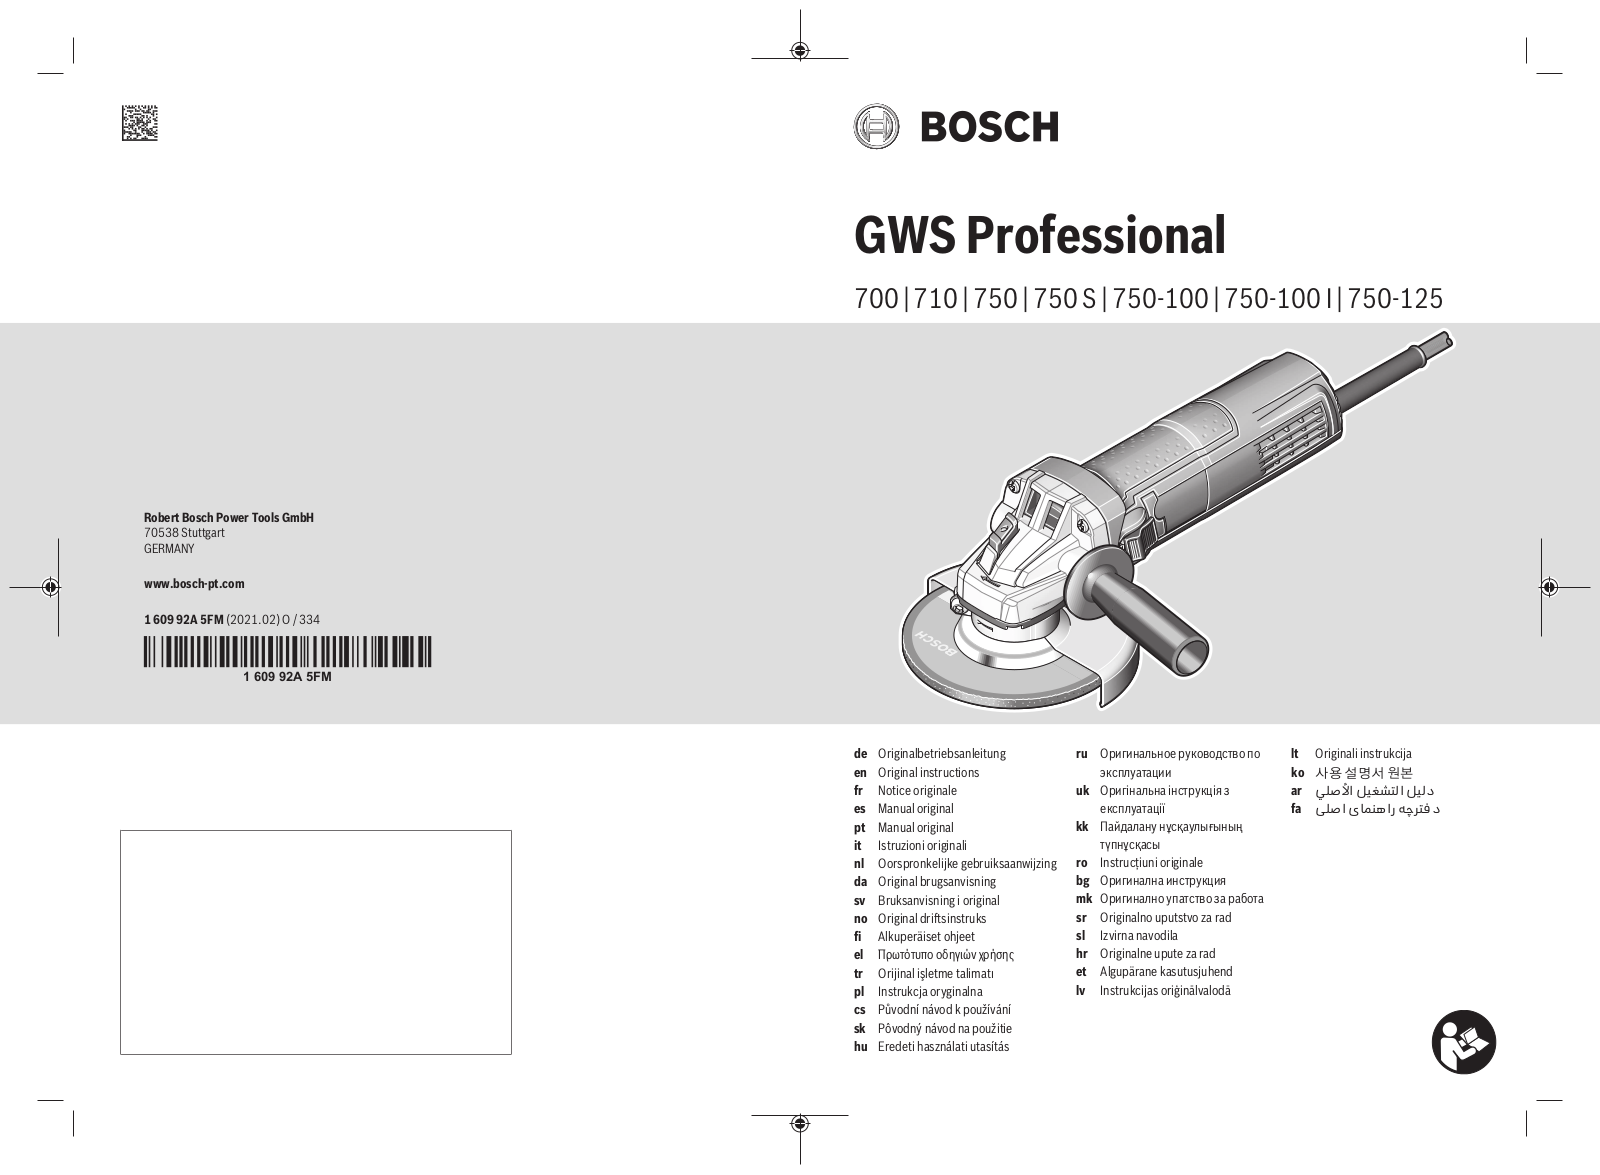 Bosch GWS 700, GWS 710, GWS 750, GWS 750-100 I, GWS 750-100 User Manual